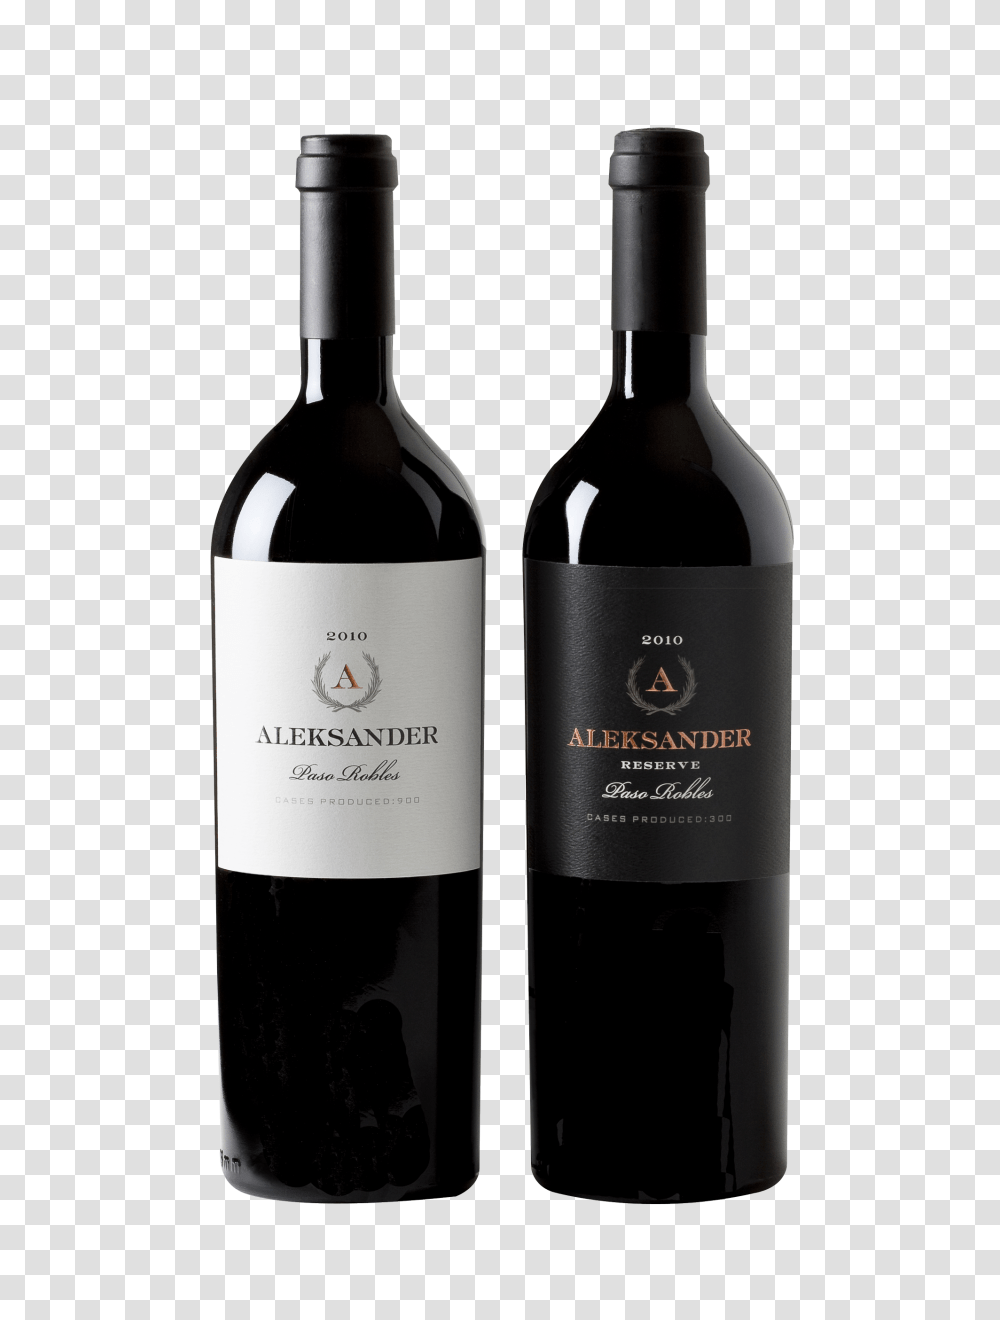 Download Wine Bottle Image Wine Bottle Background, Alcohol, Beverage, Drink, Red Wine Transparent Png